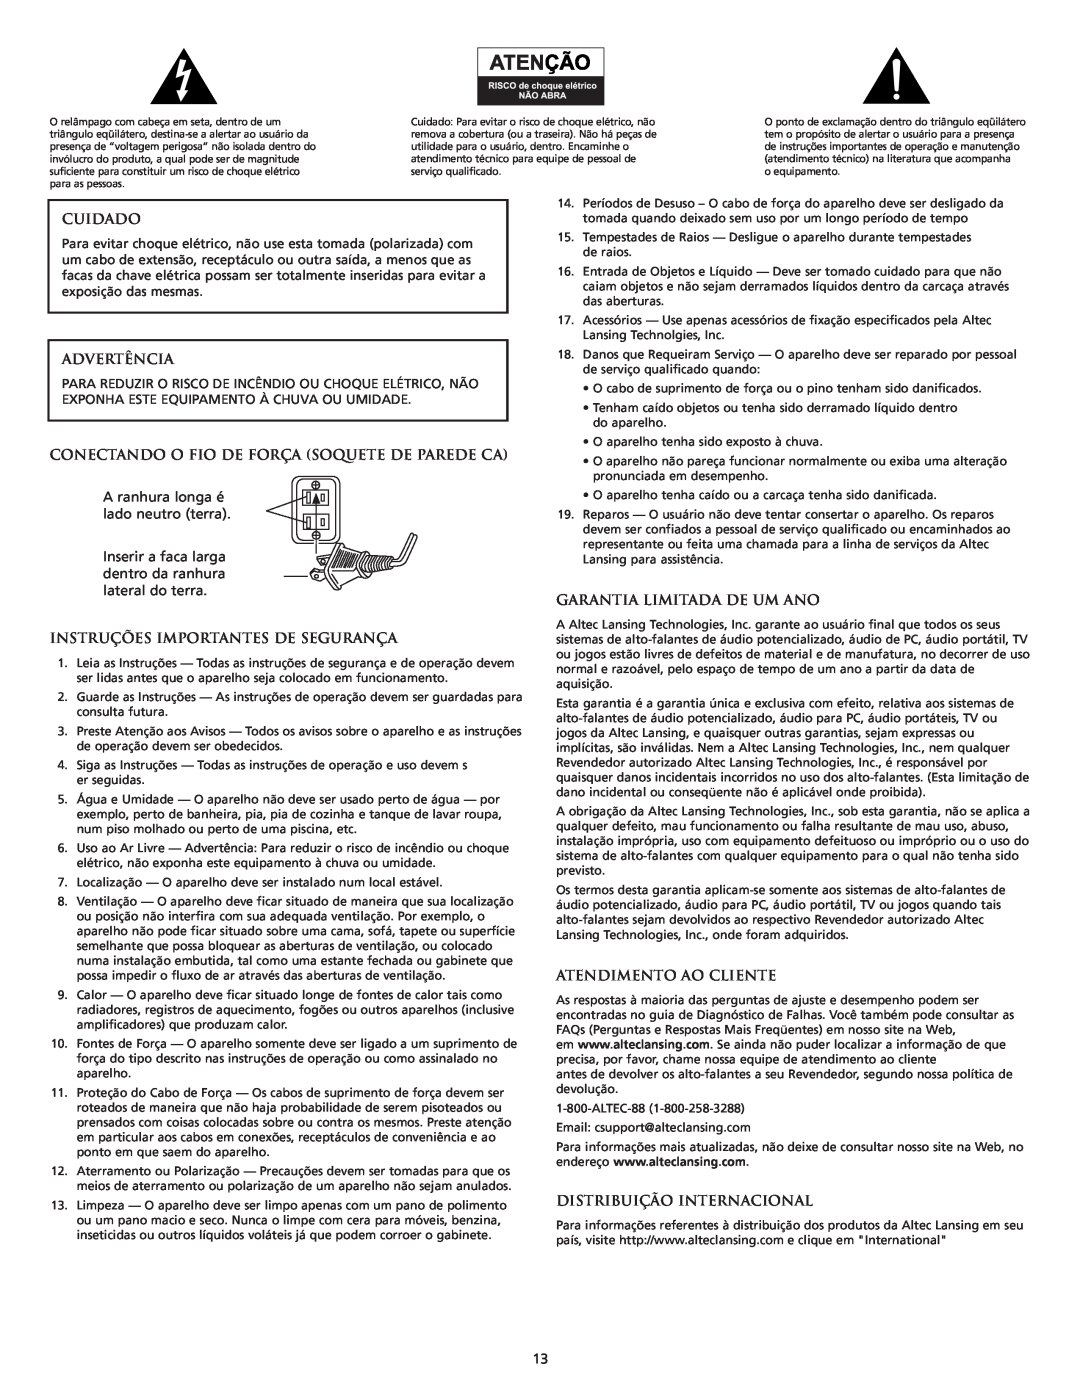 Altec Lansing 3151 manual Cuidado, Advertência, Conectando O Fio De Força Soquete De Parede Ca, Garantia Limitada De Um Ano 